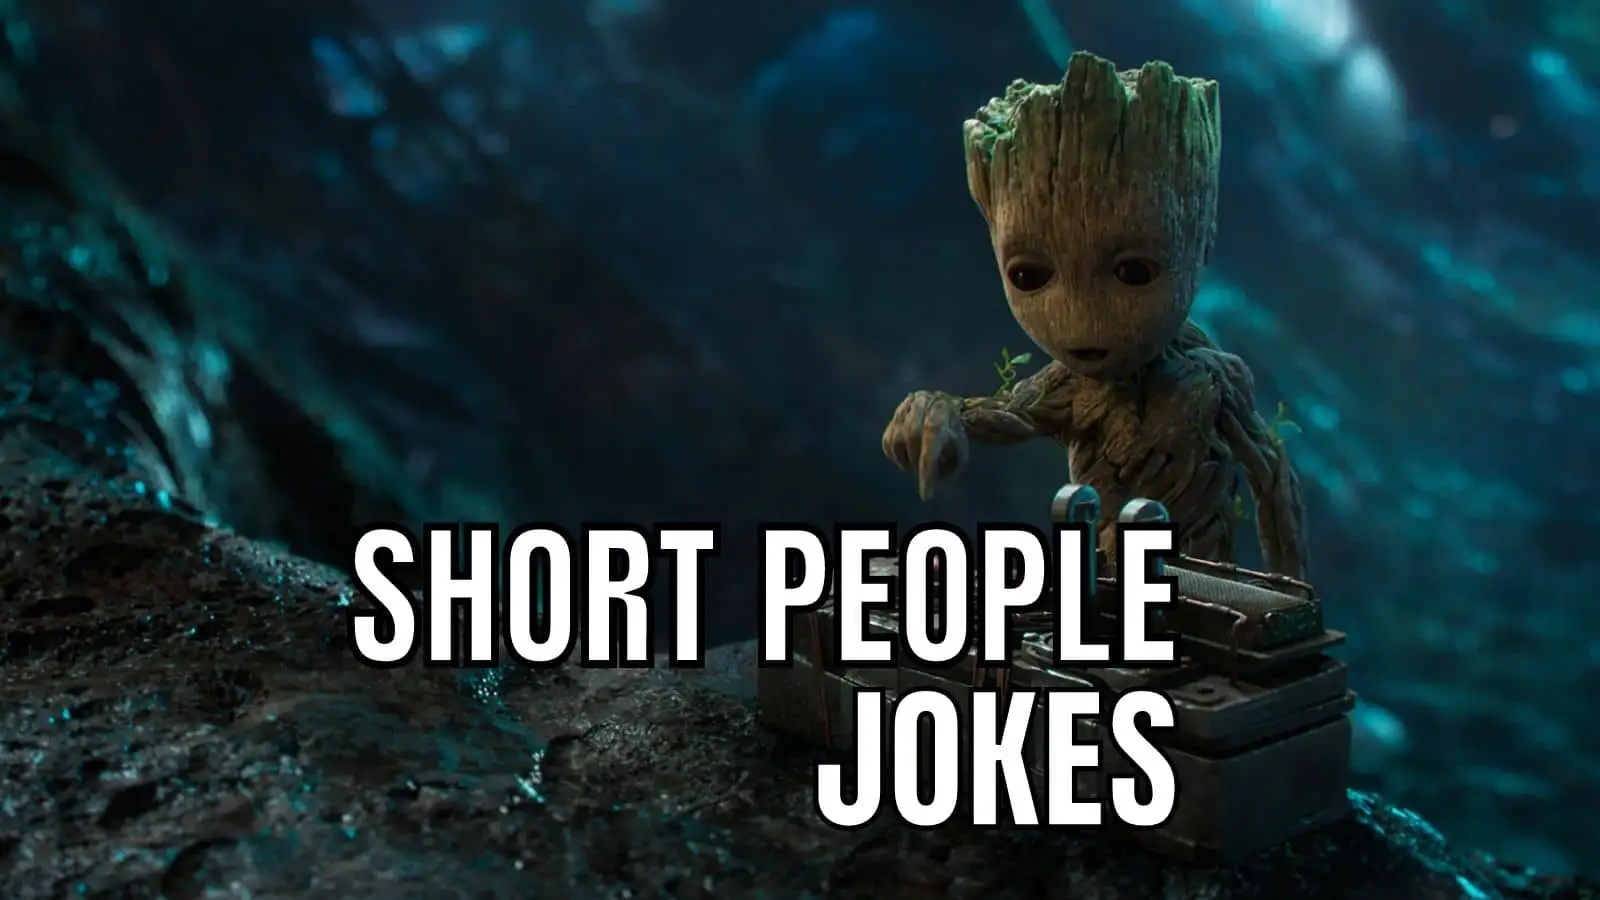 Short People Jokes on Dwarf